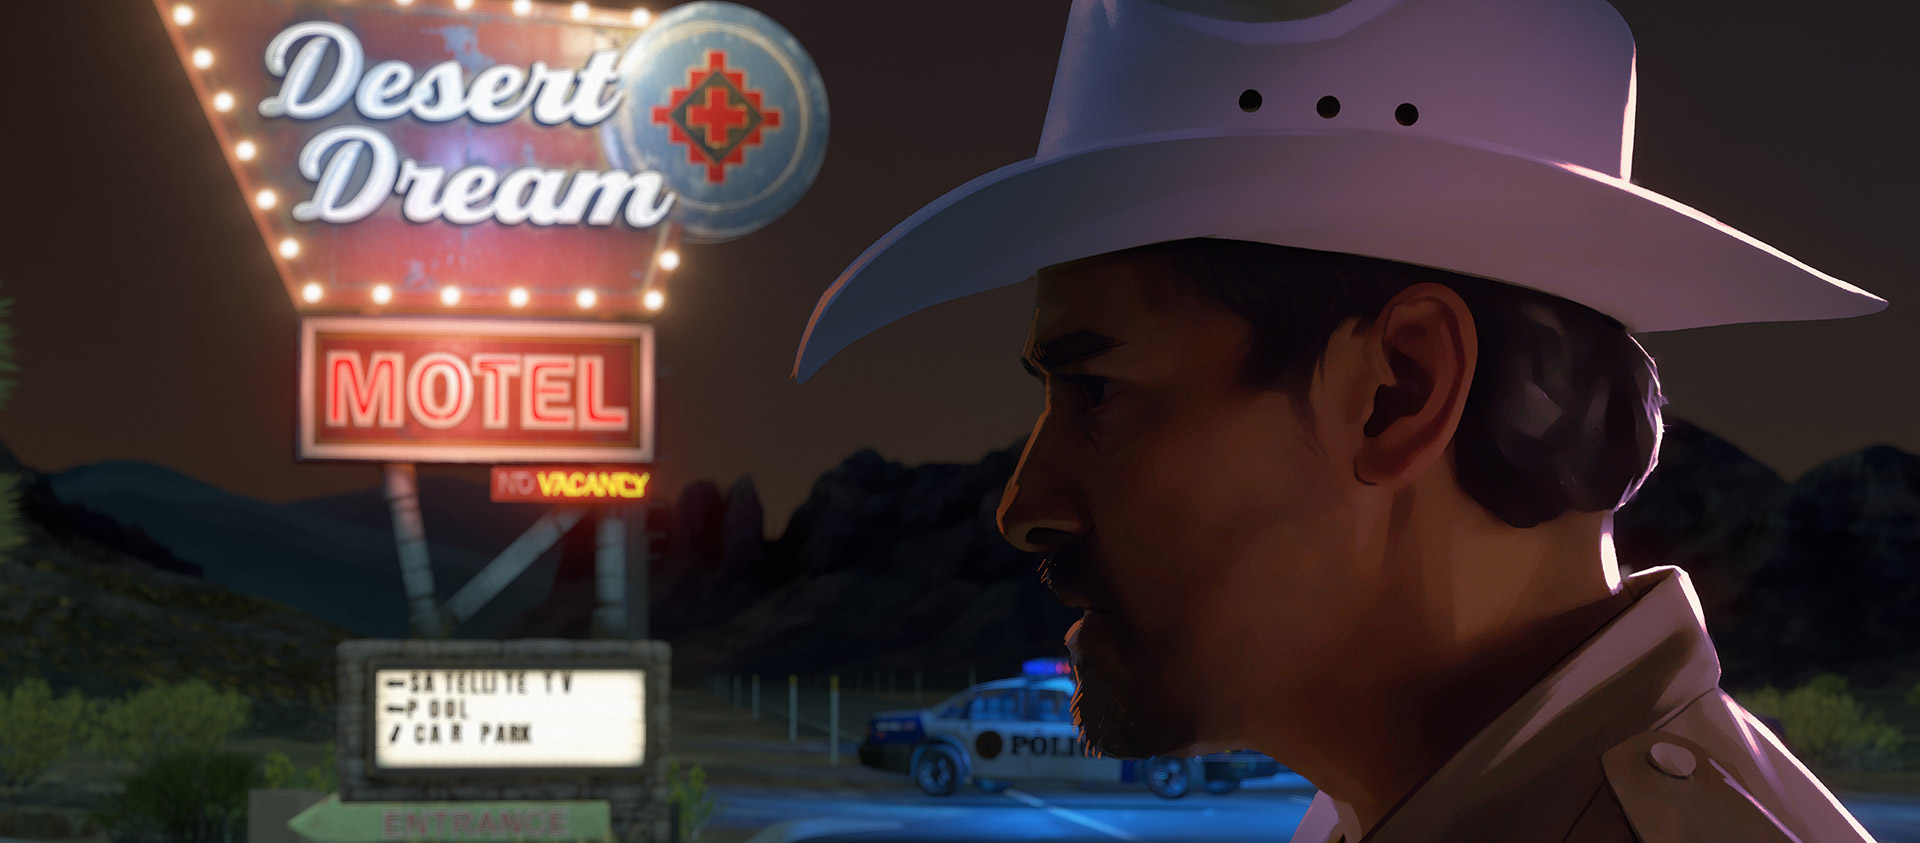 En polis i cowboyhatt står under en neonupplyst motellskylt.